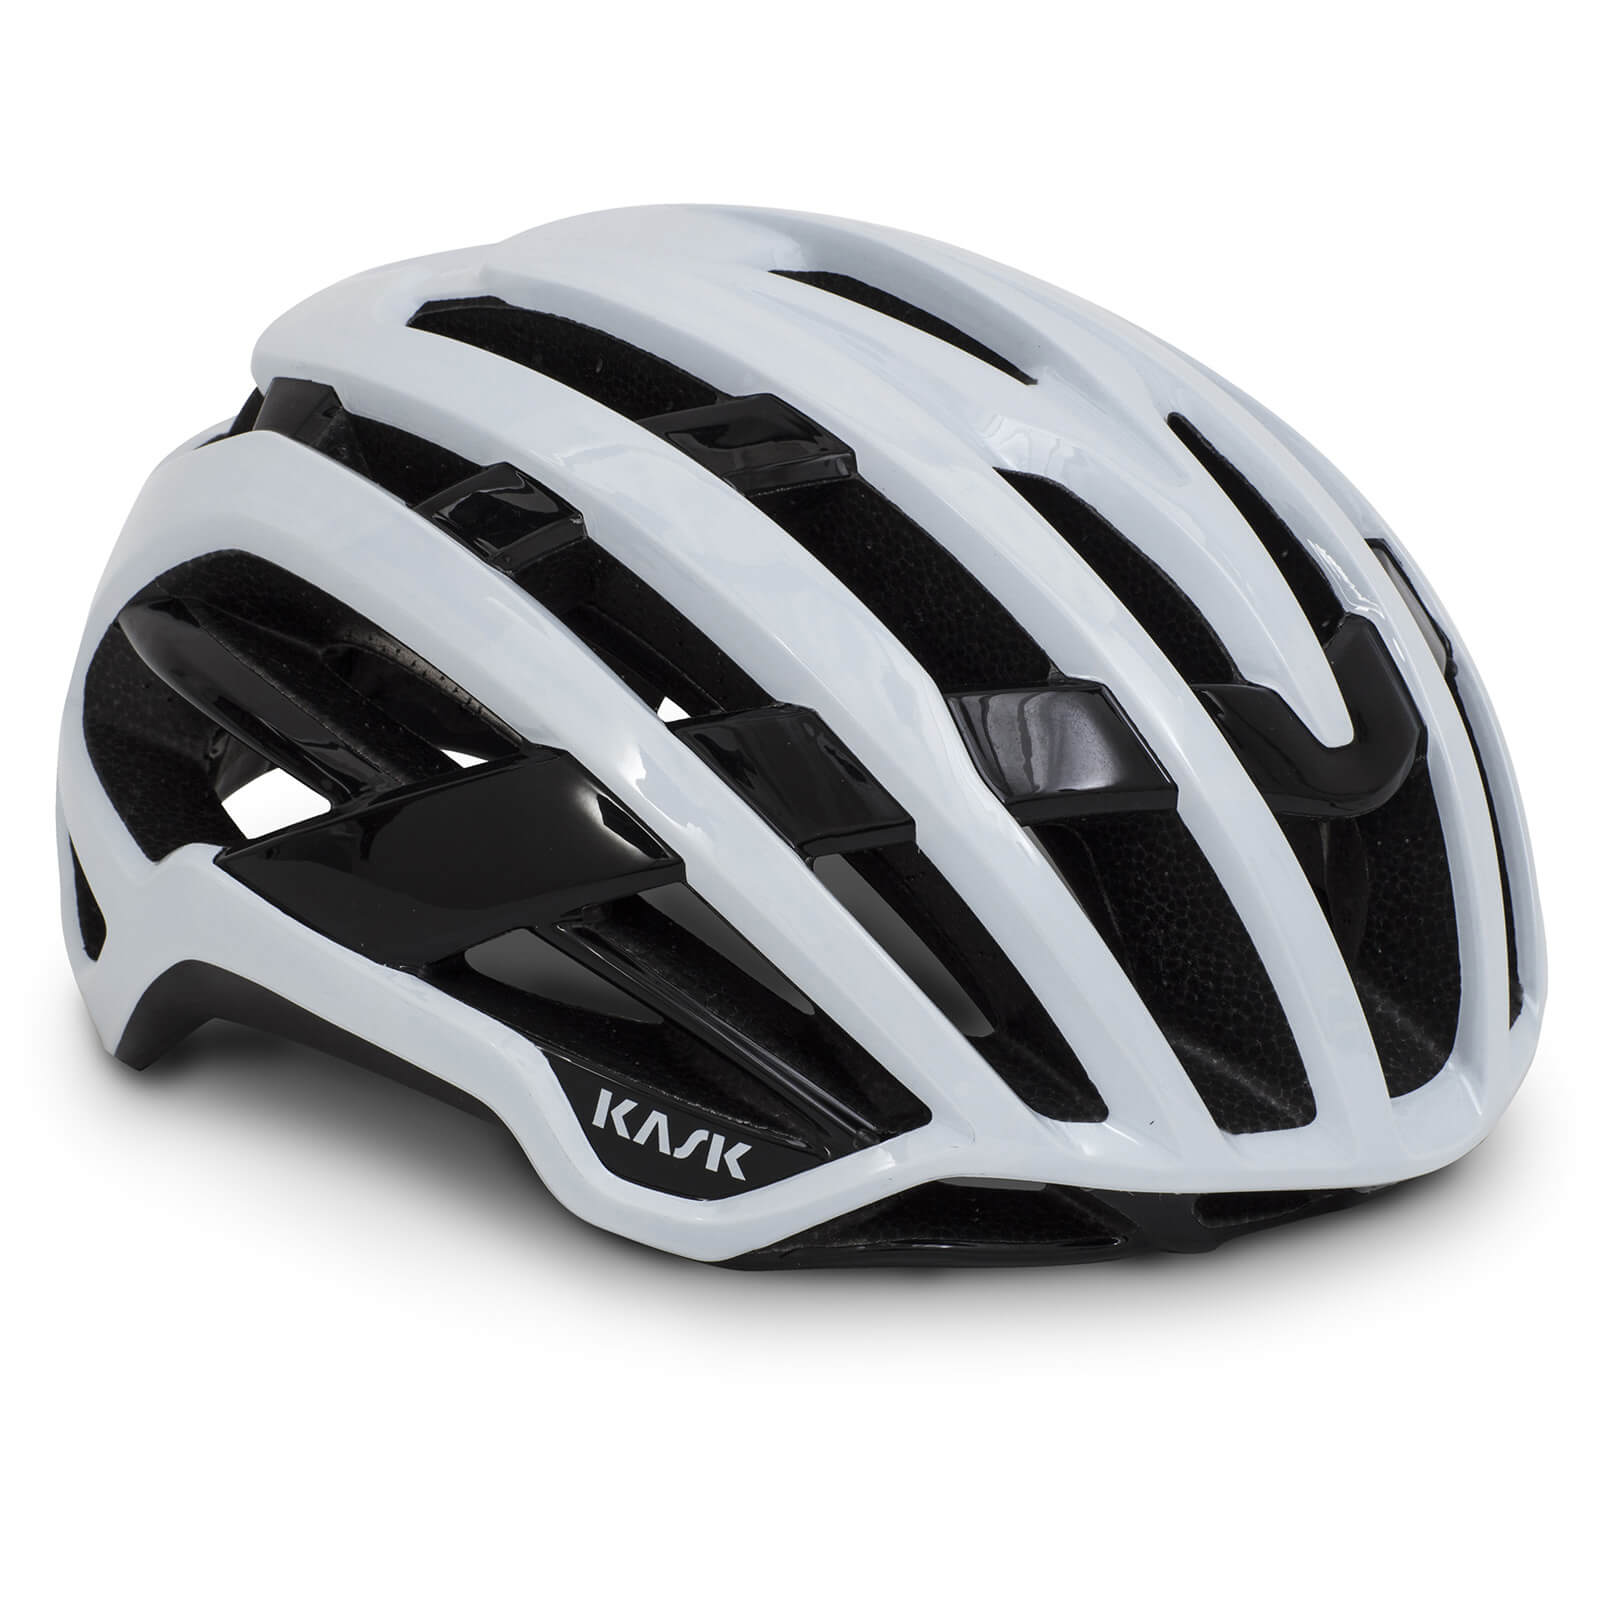 Kask Valegro WG11 Road Helmet - M - White